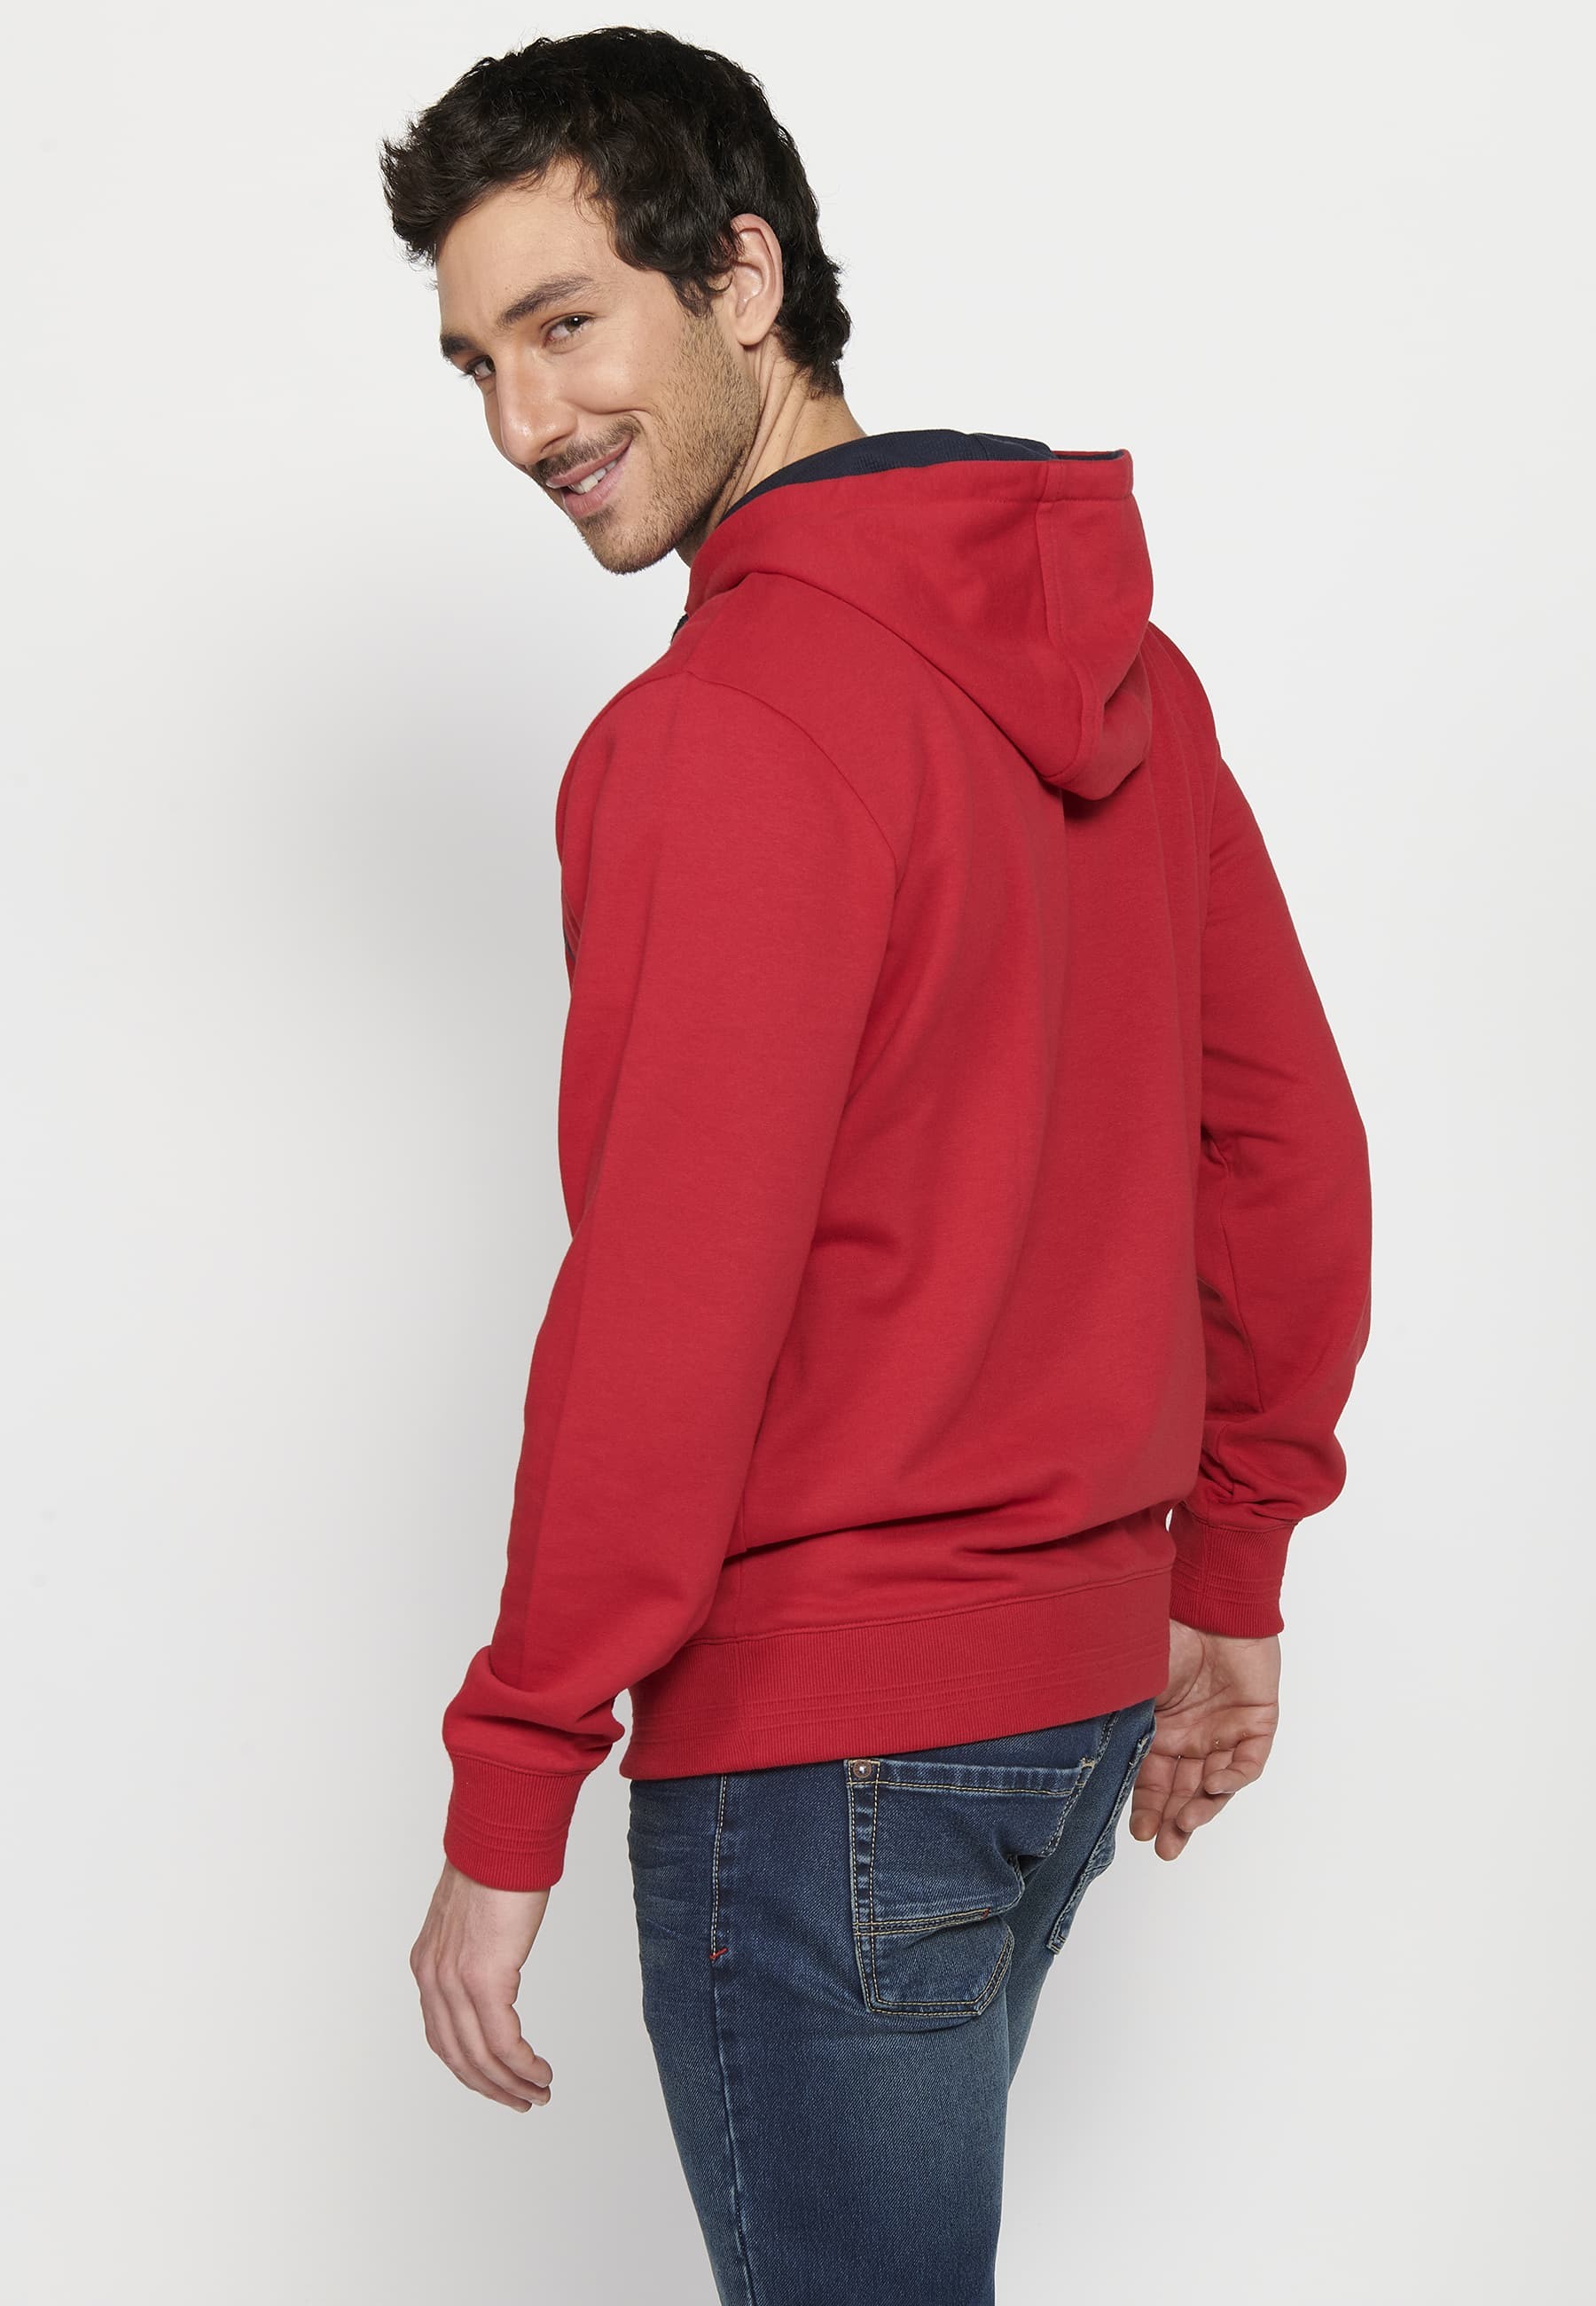 Herren-Sweatshirt mit Kapuze und langen Ärmeln in Rot mit geprägtem Detail vorne 6